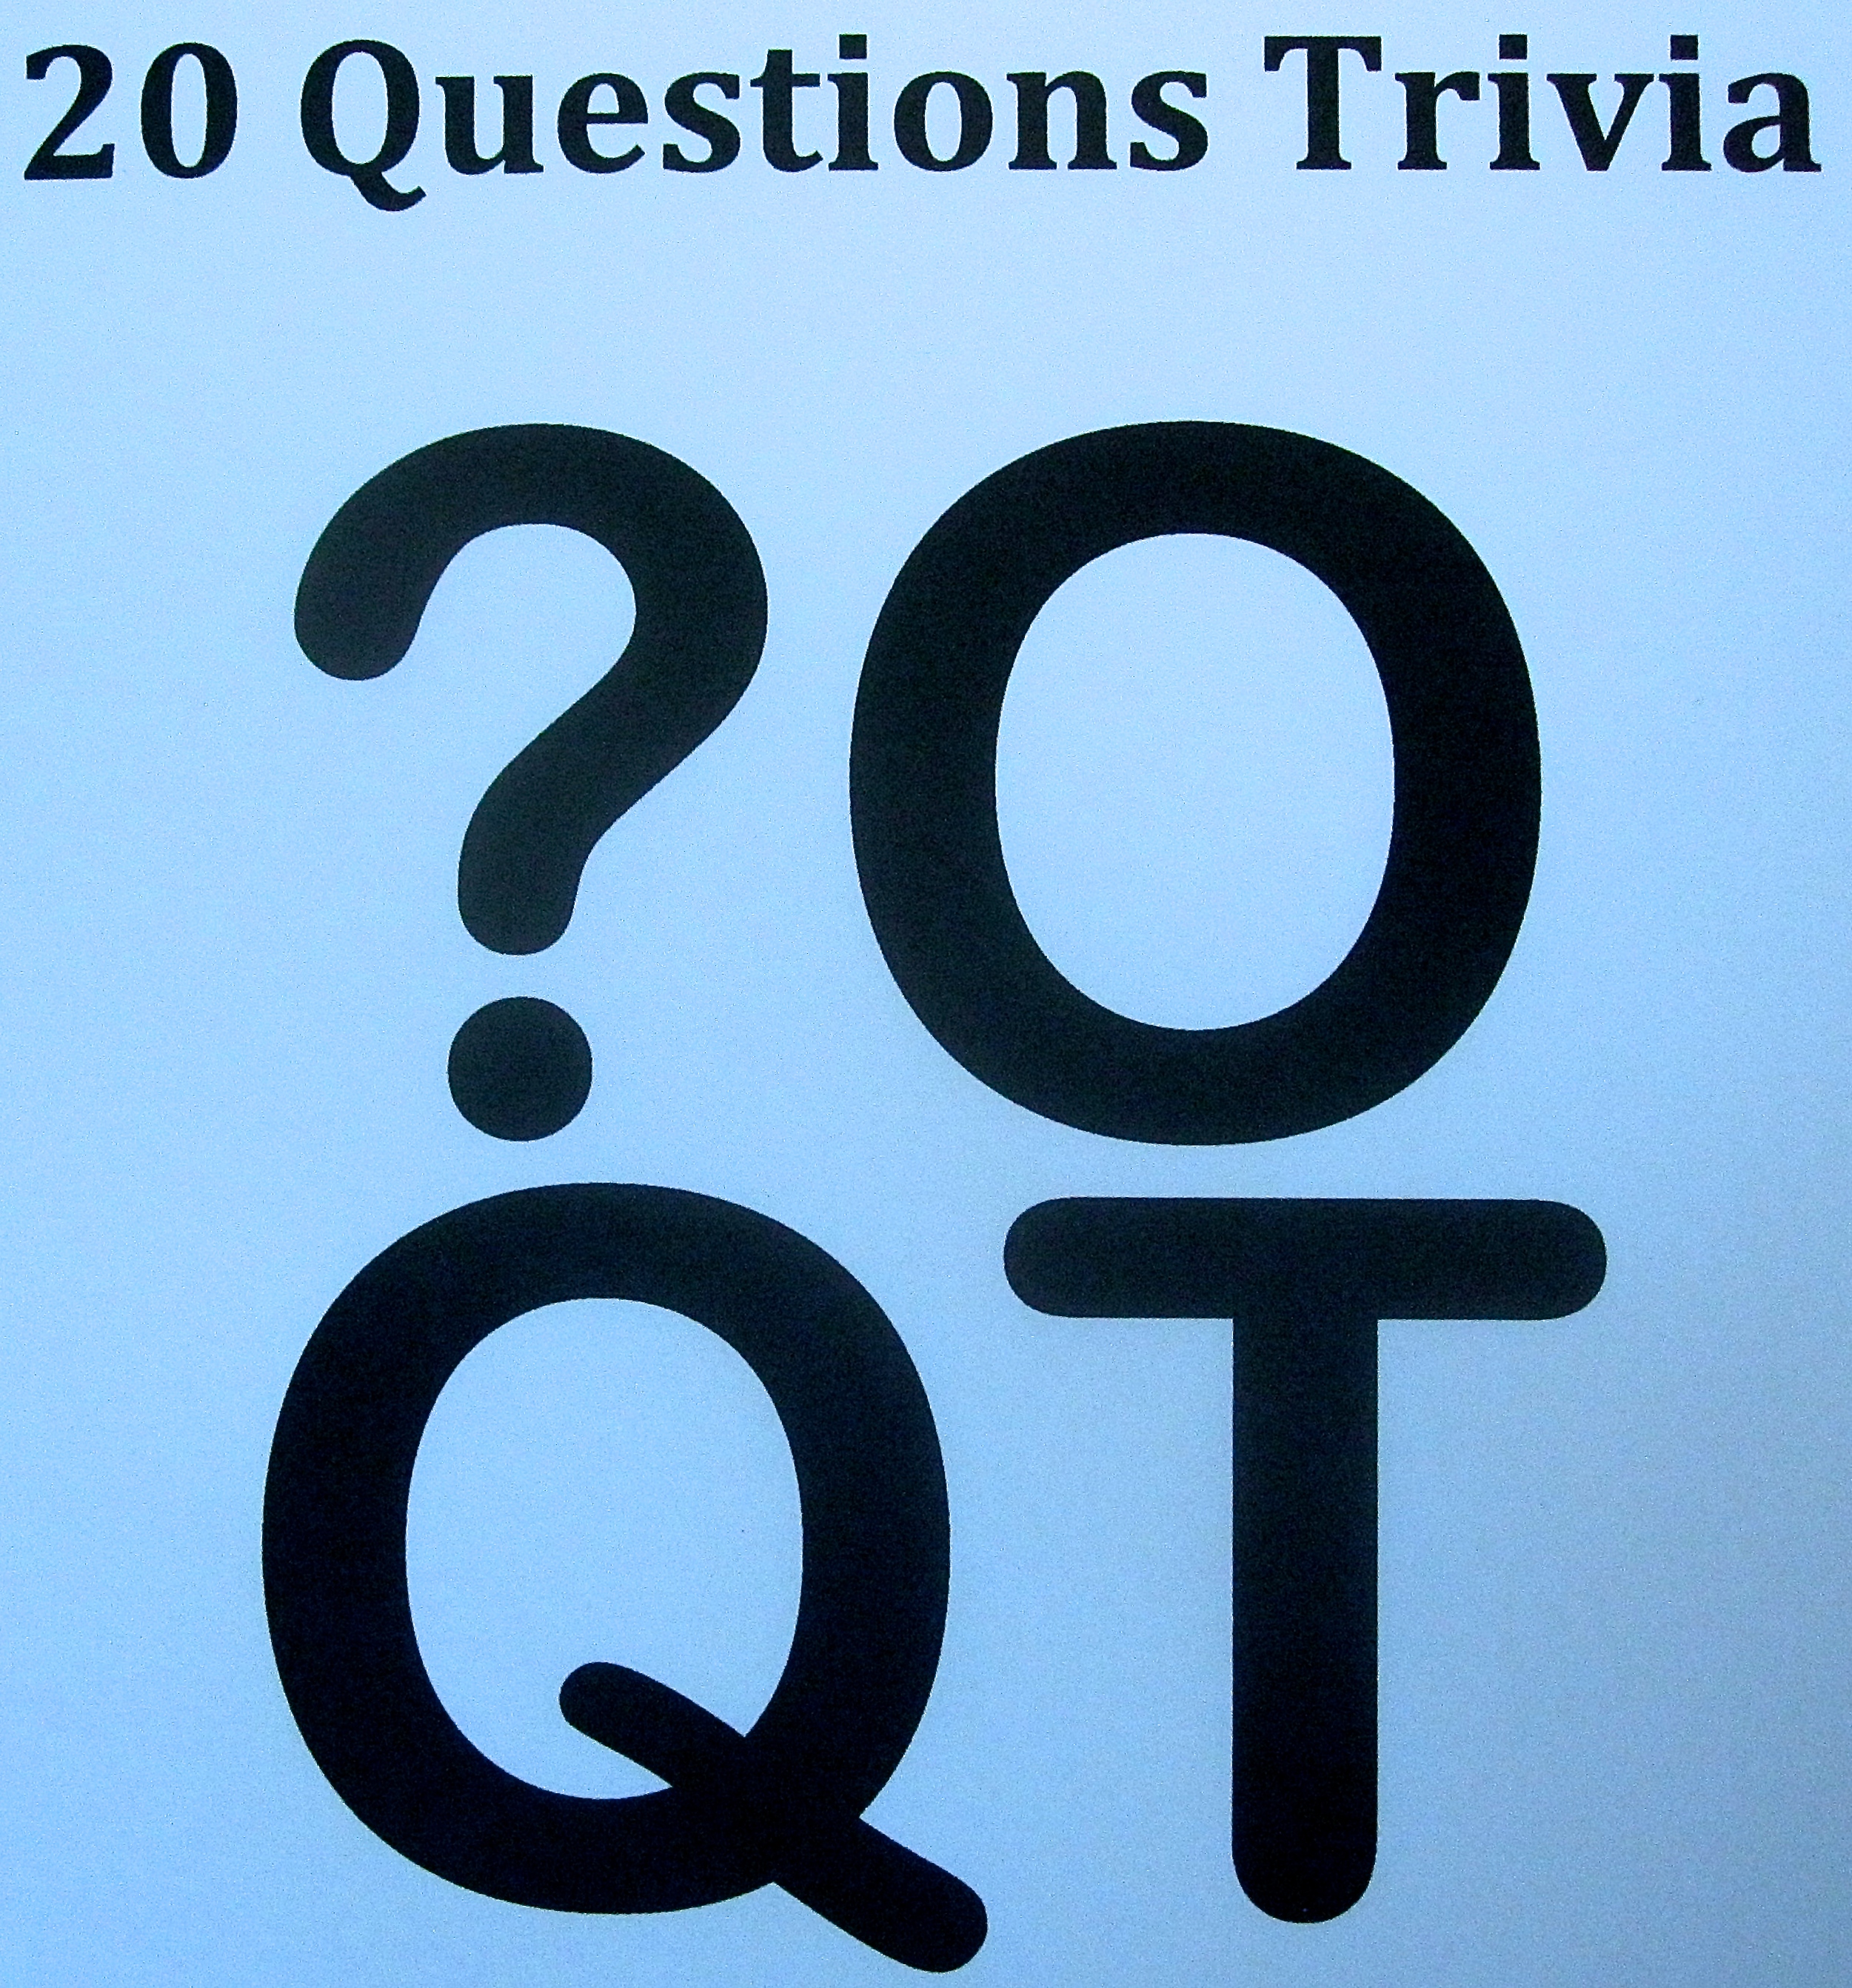 20 Questions Trivia